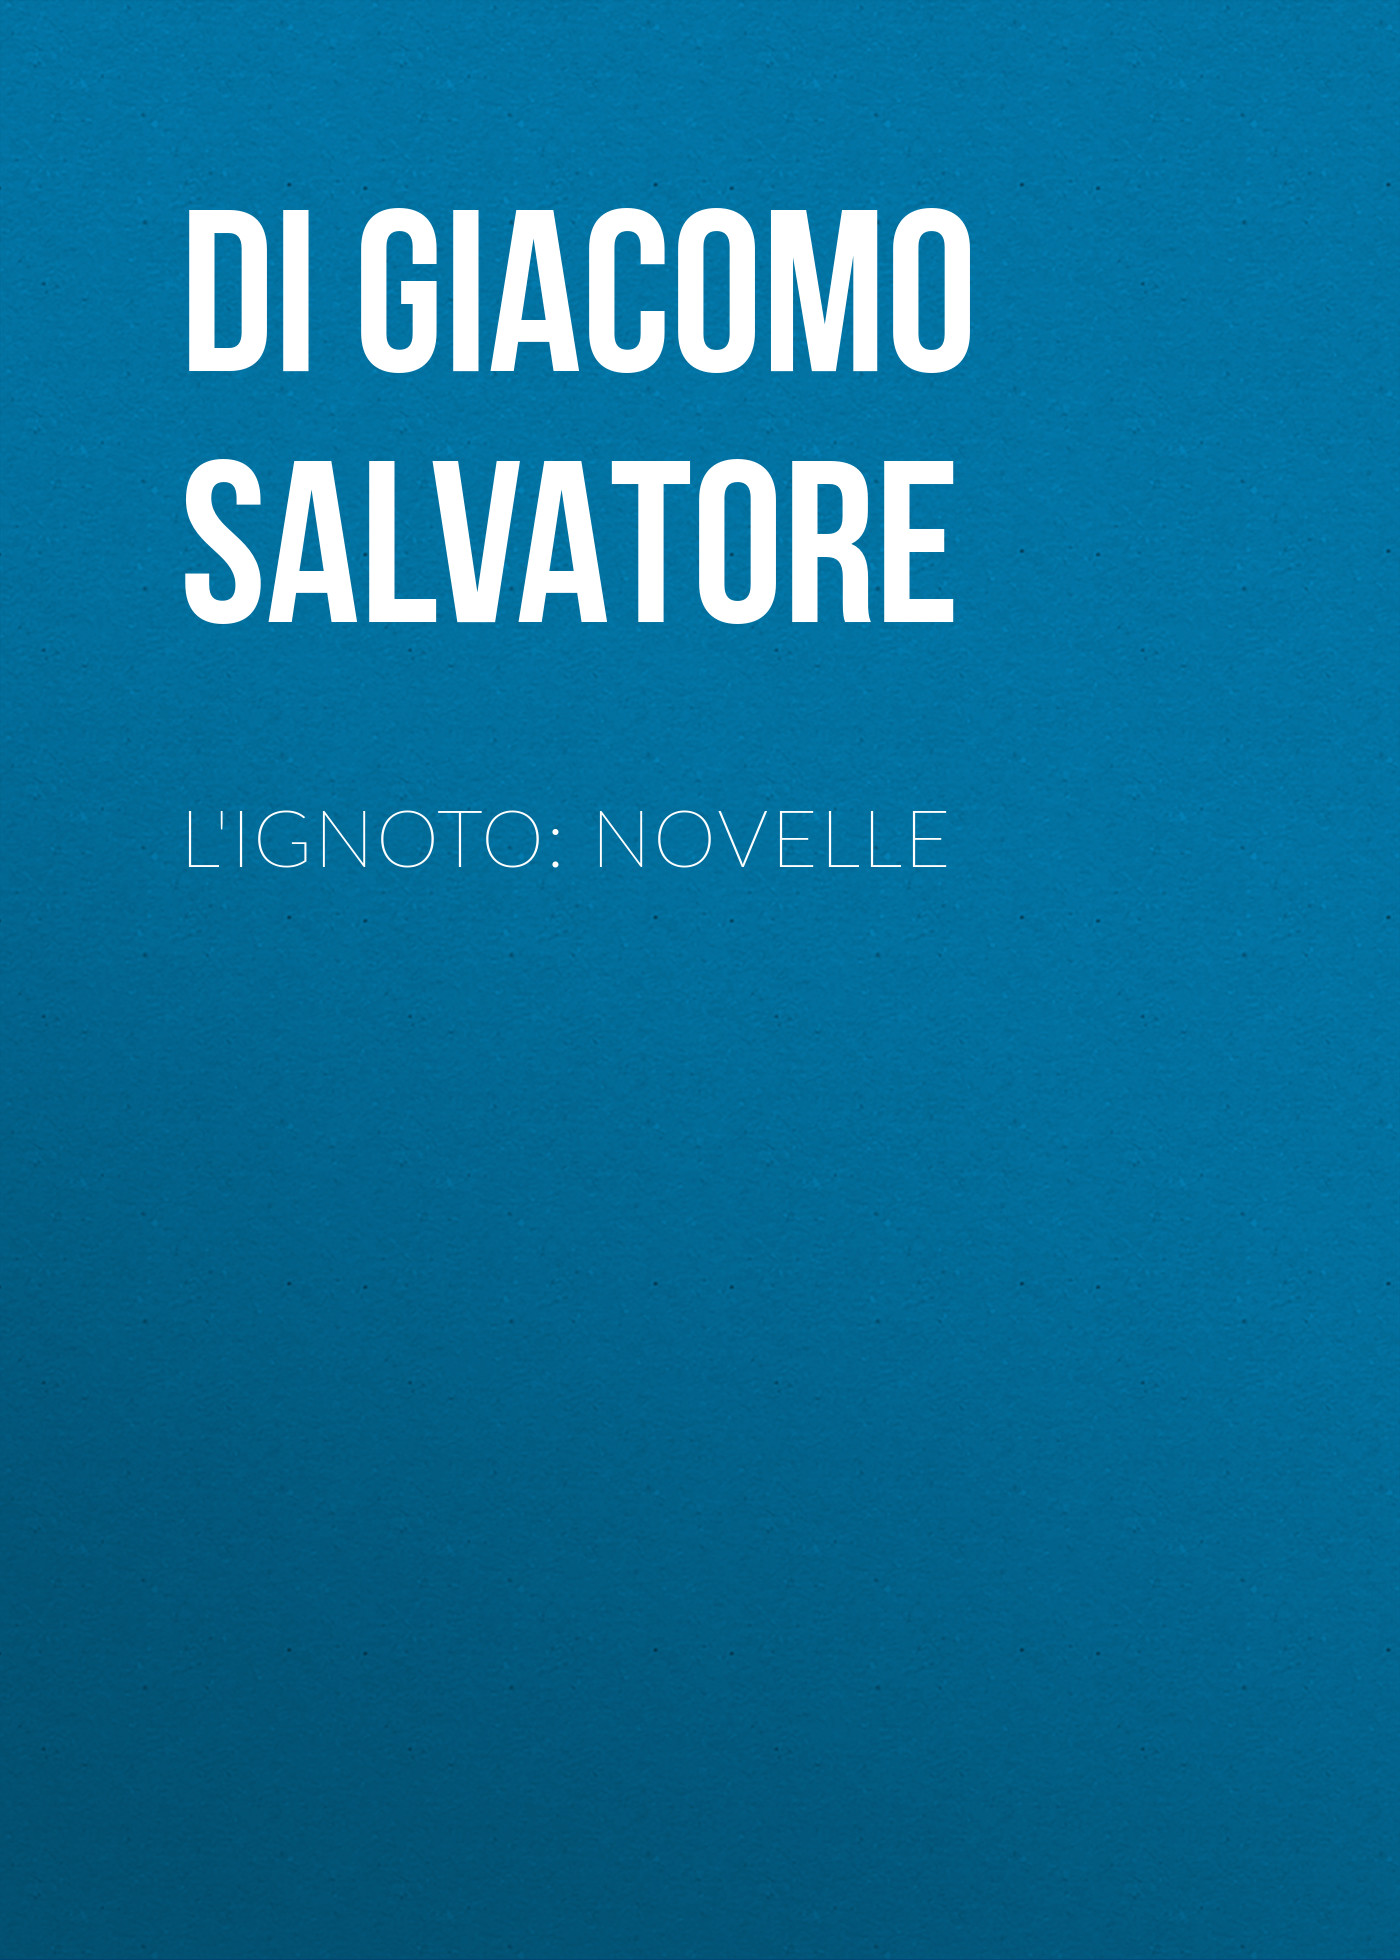 Книга L'ignoto: Novelle из серии , созданная Salvatore Di Giacomo, может относится к жанру Зарубежная старинная литература, Зарубежная классика, Рассказы. Стоимость электронной книги L'ignoto: Novelle с идентификатором 24548188 составляет 0 руб.